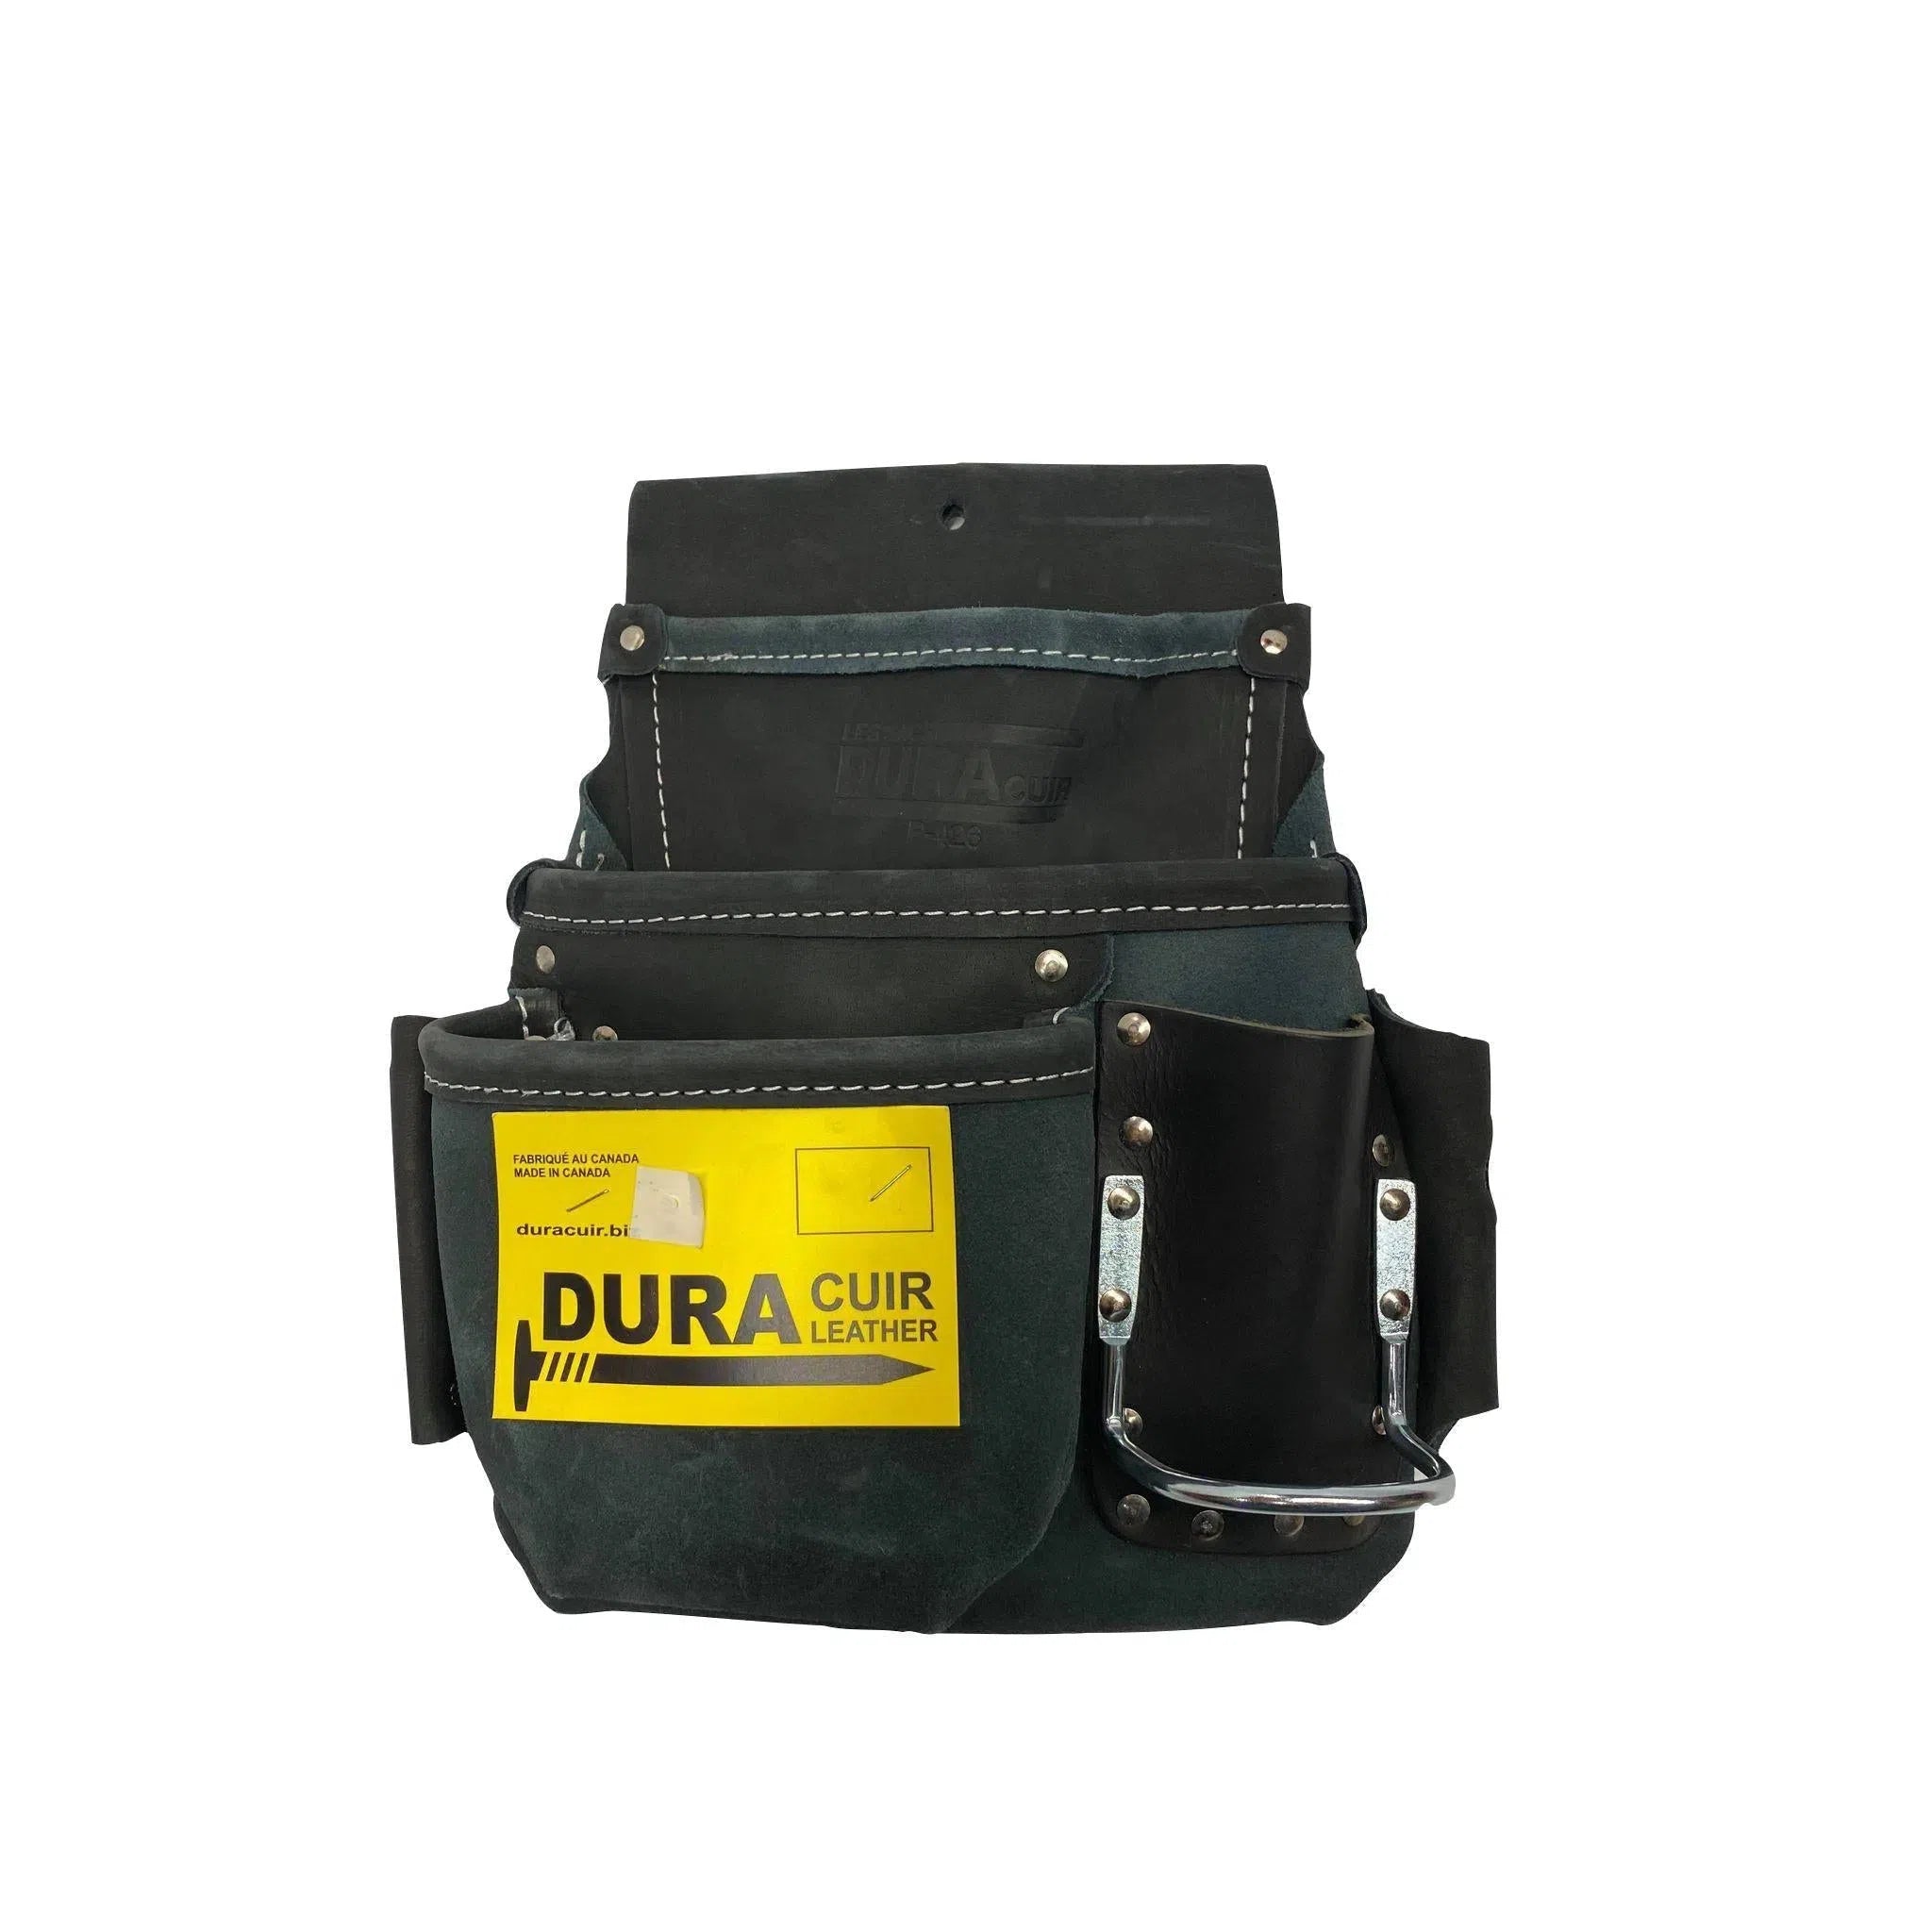 Duracuir P-426 tool bag